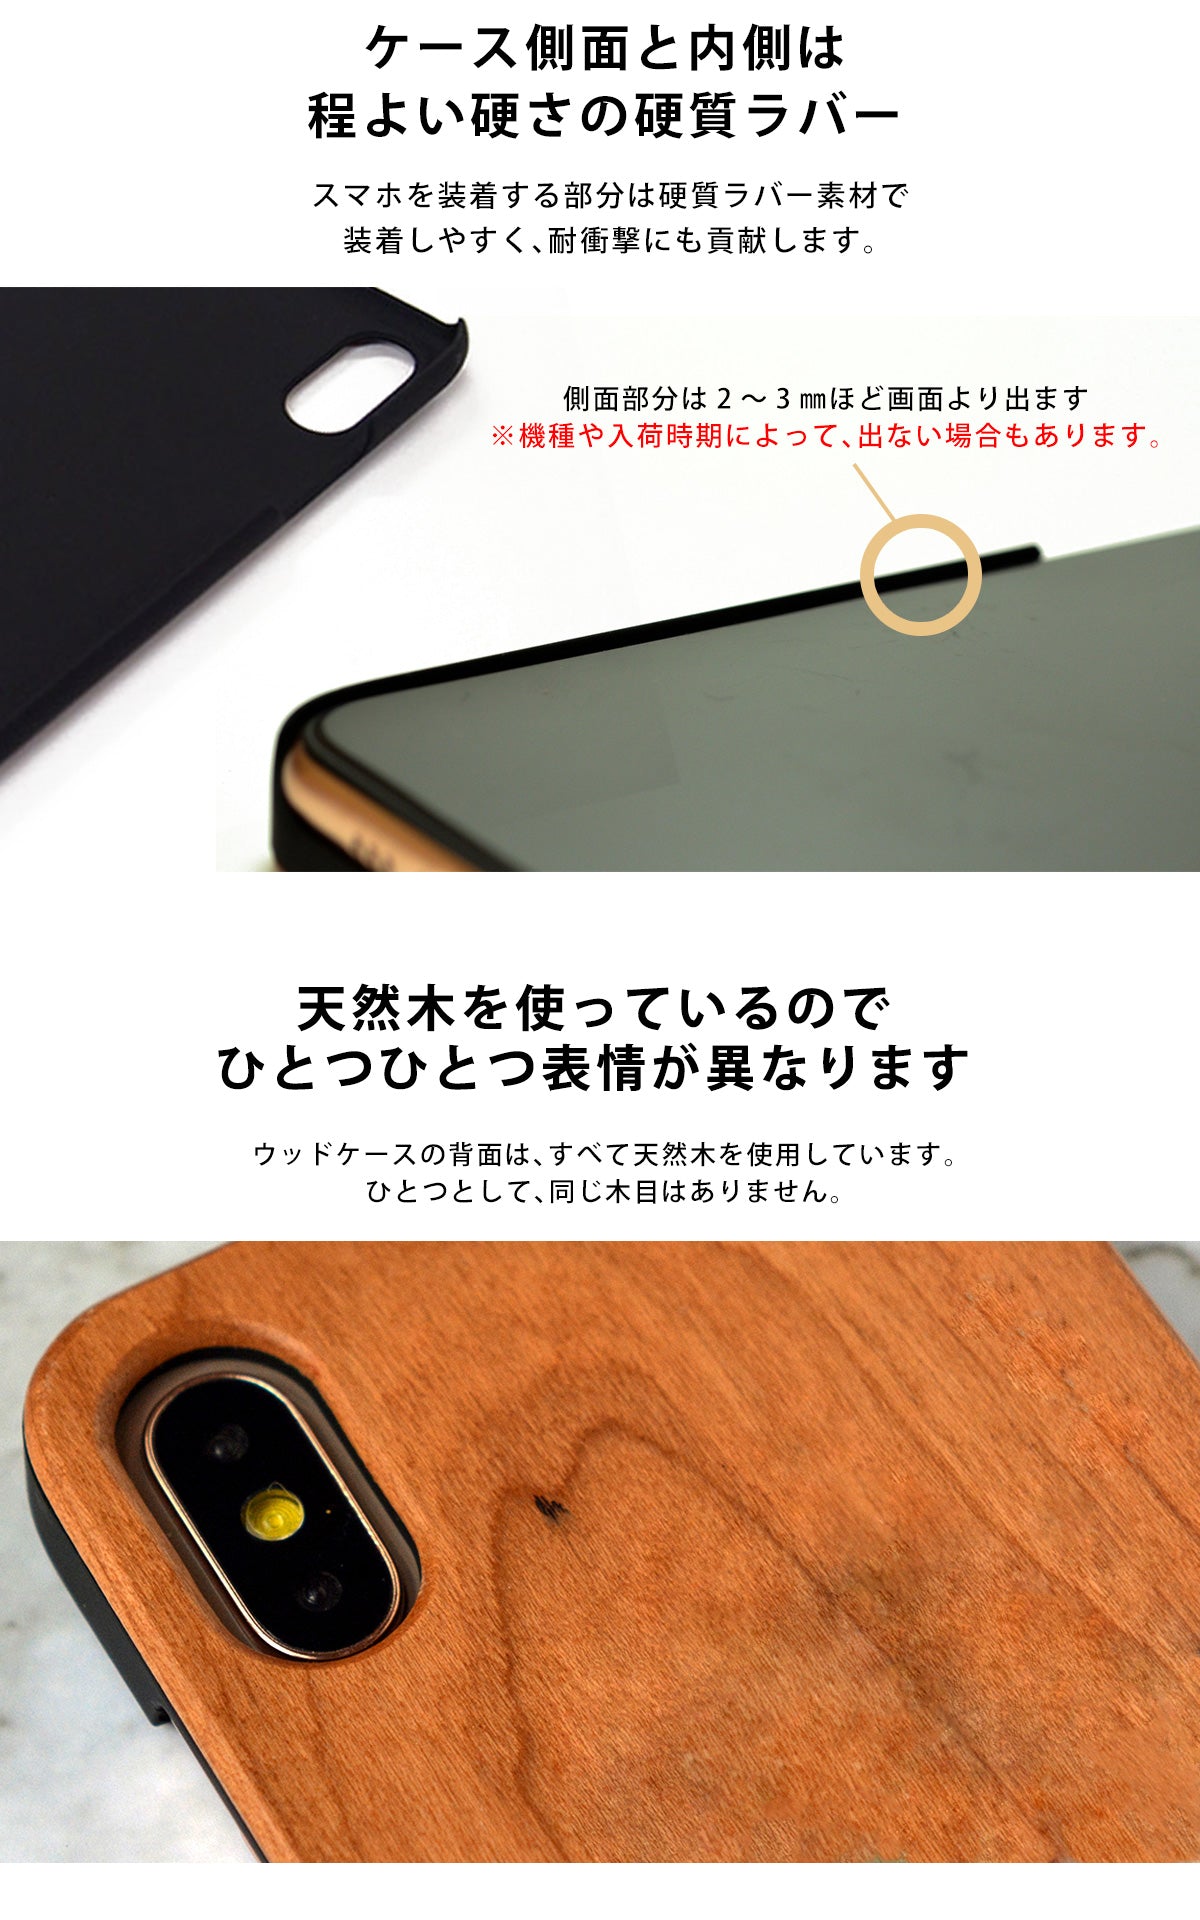 ウッド 木製 竹製 天然木 iPhone Xperia ケース tr1049